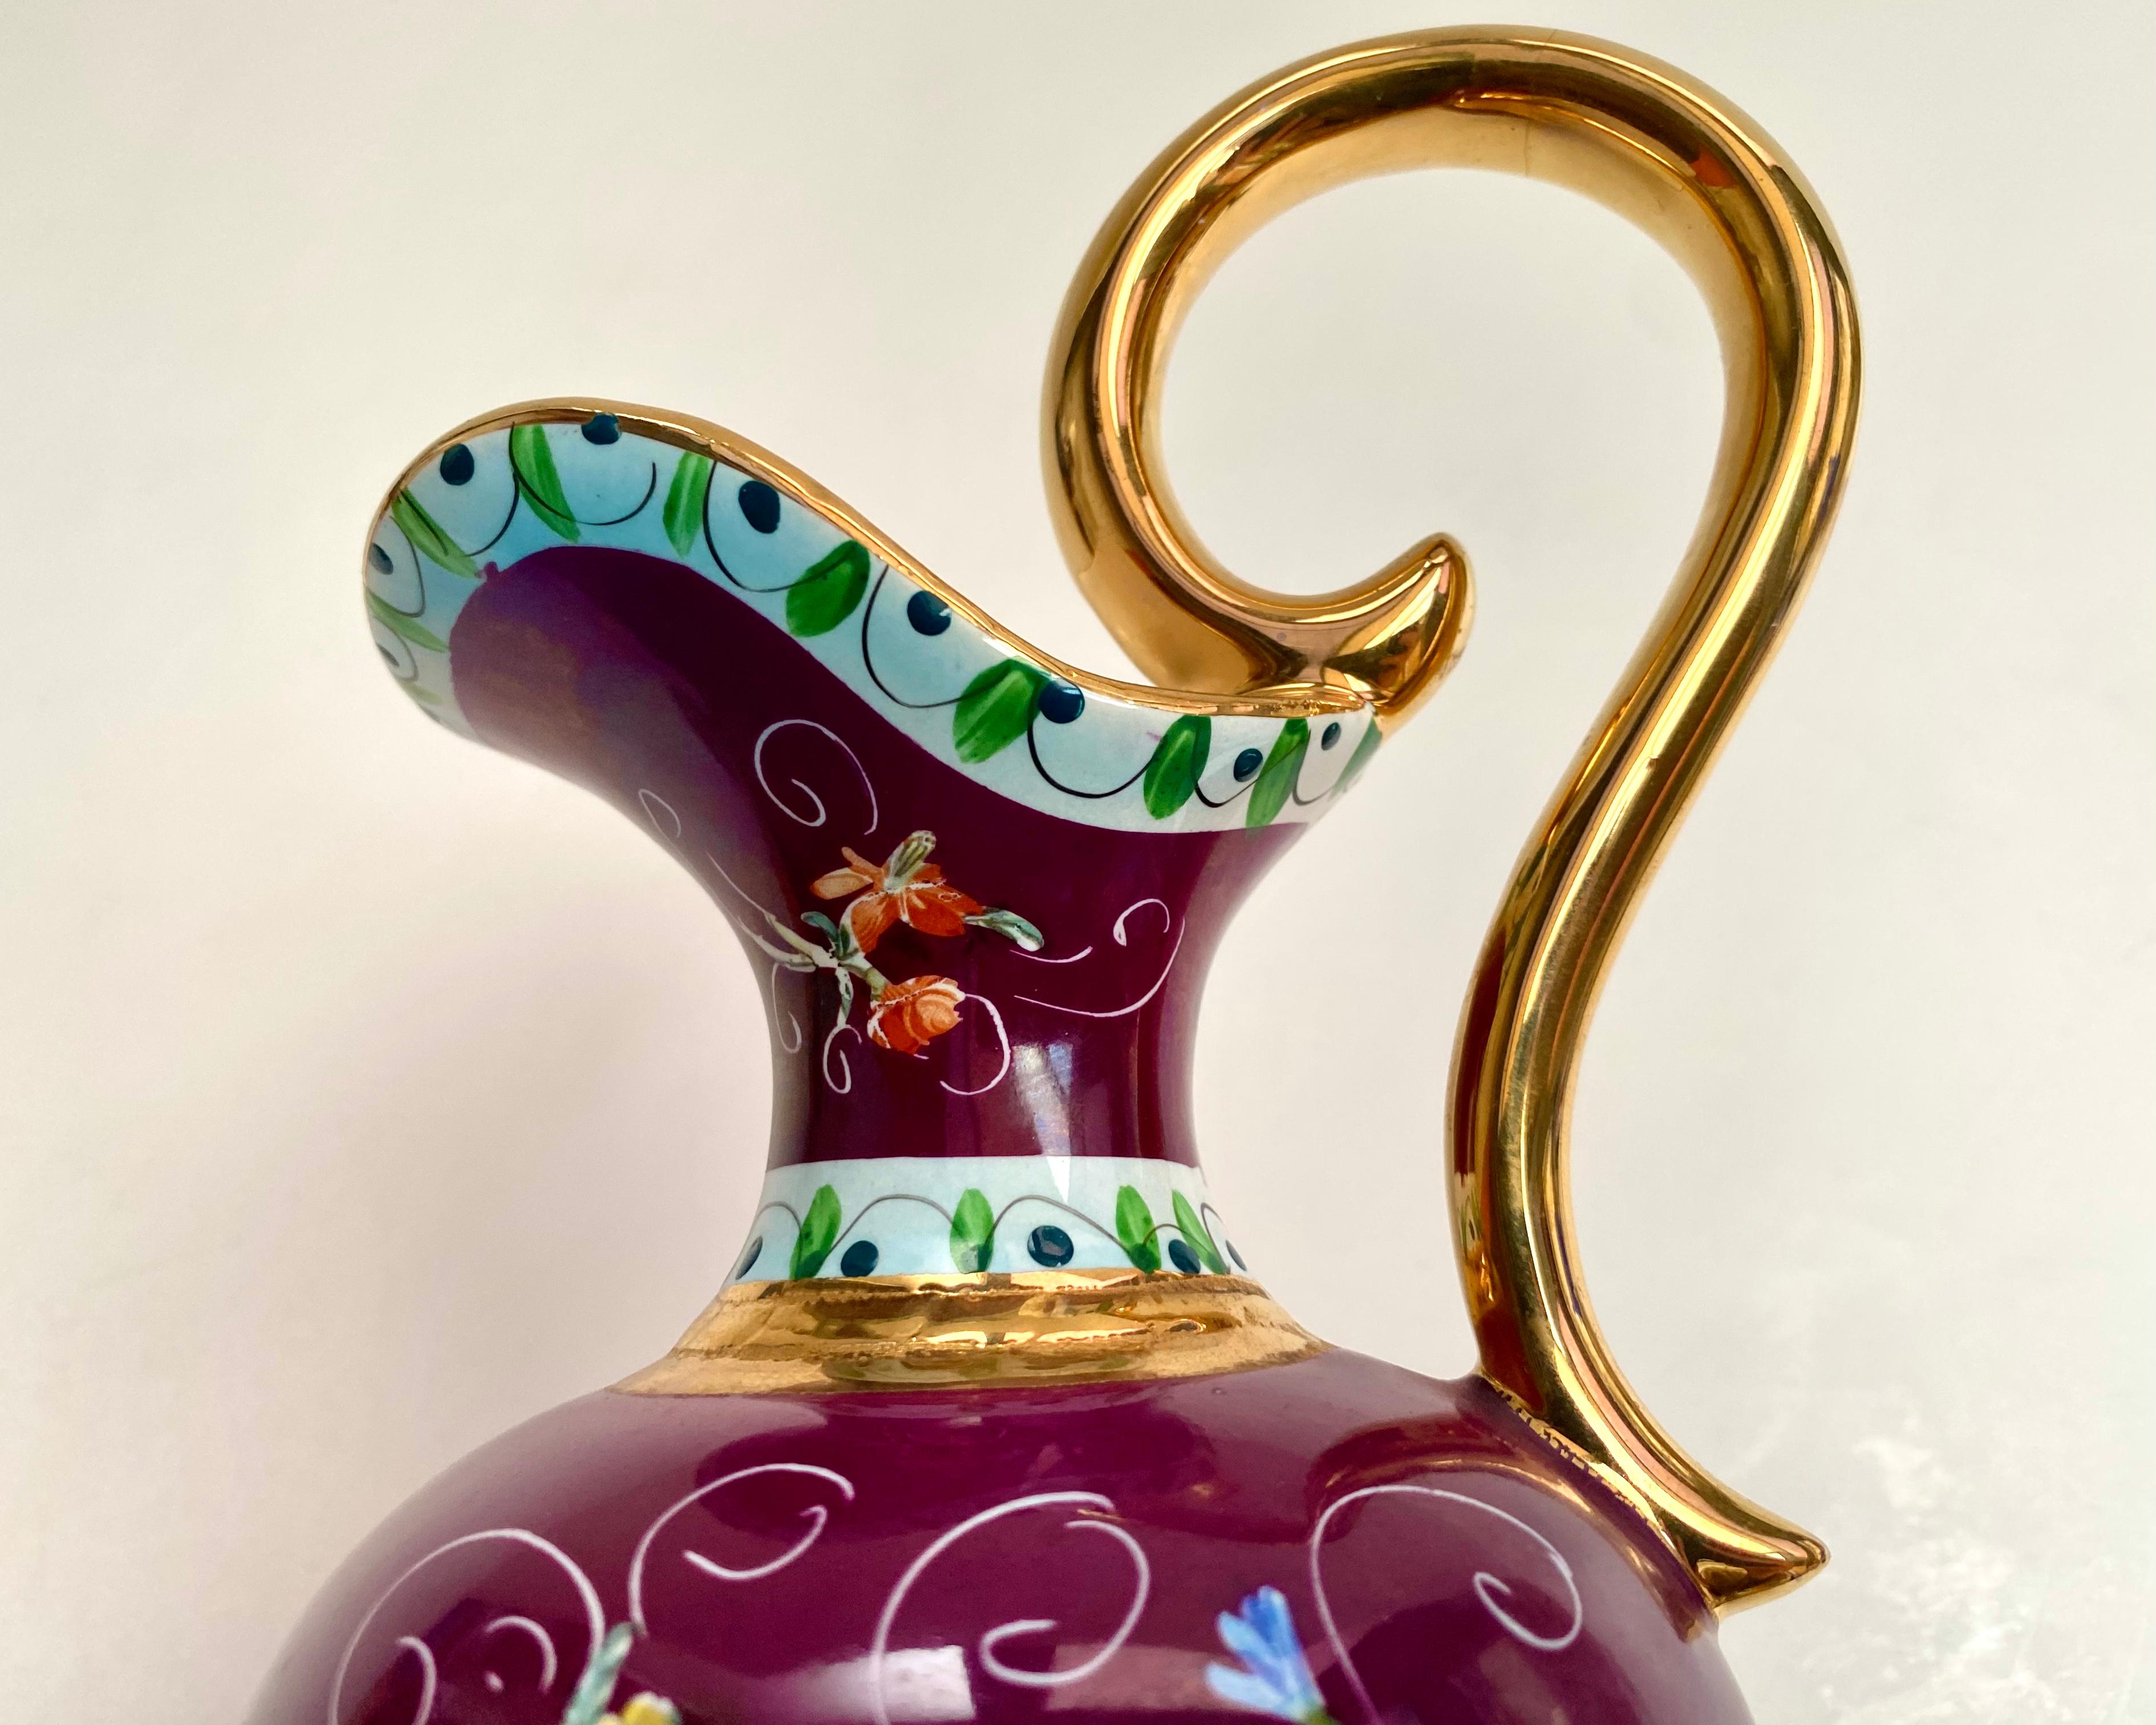 Magnifique vase pichet en céramique Hubert Bequet avec un beau fond bordeaux décoré d'un motif émaillé en relief de fleurs colorées.

Belgique, années 1970

Tous les objets sont fabriqués et peints à la main. Tous les accents sont dorés, y